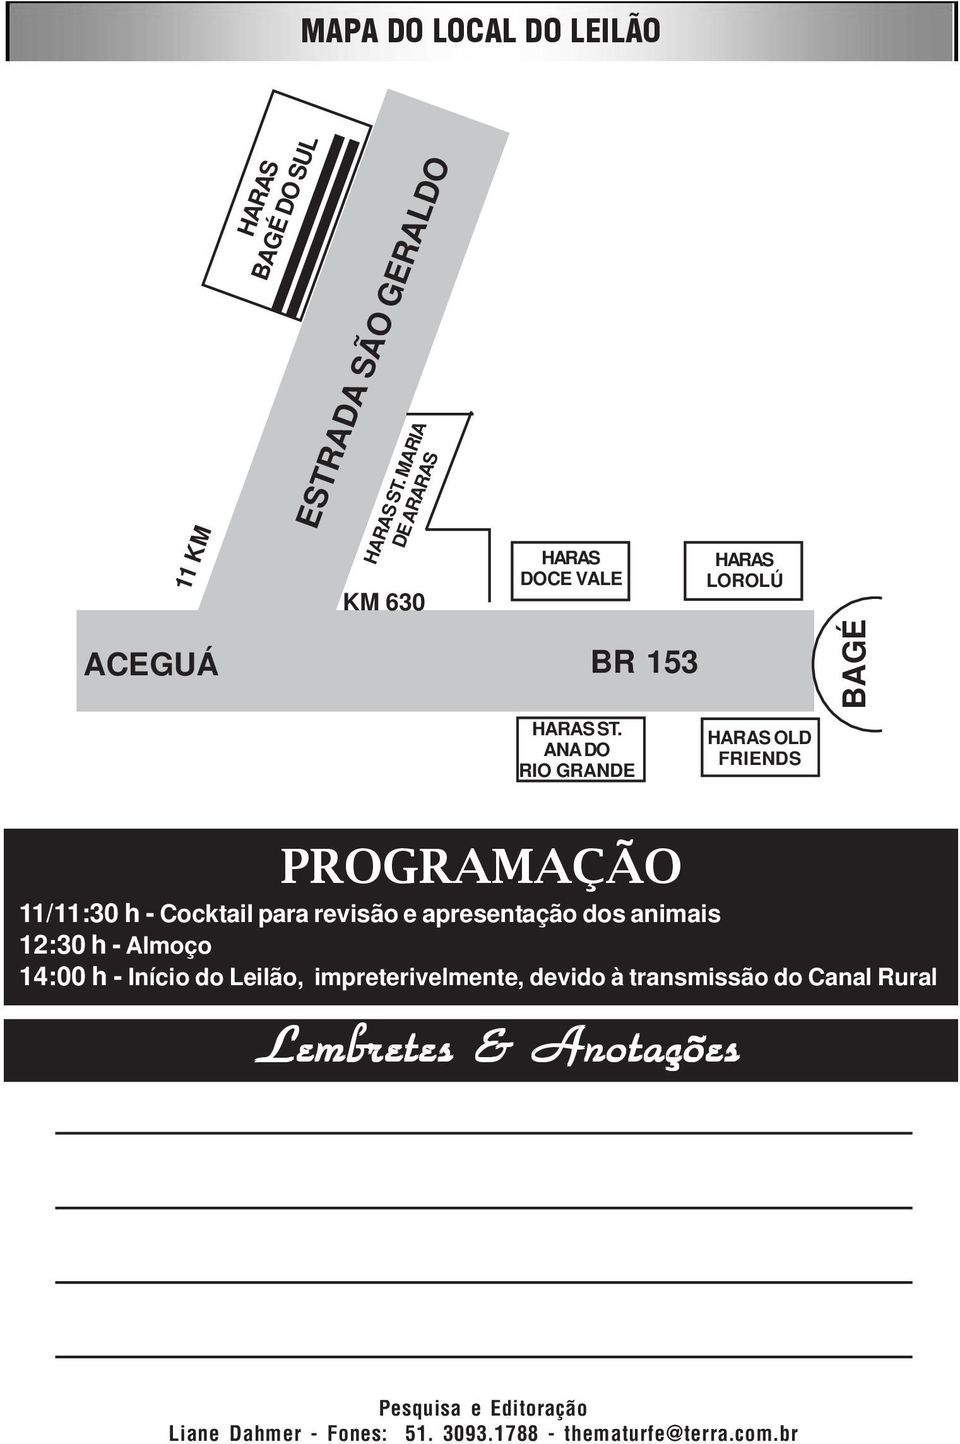 ANA DO RIO GRANDE HARAS OLD FRIENDS PROGRAMAÇÃO 11/11:30 h Cocktail para revisão e apresentação dos animais 12:30 h